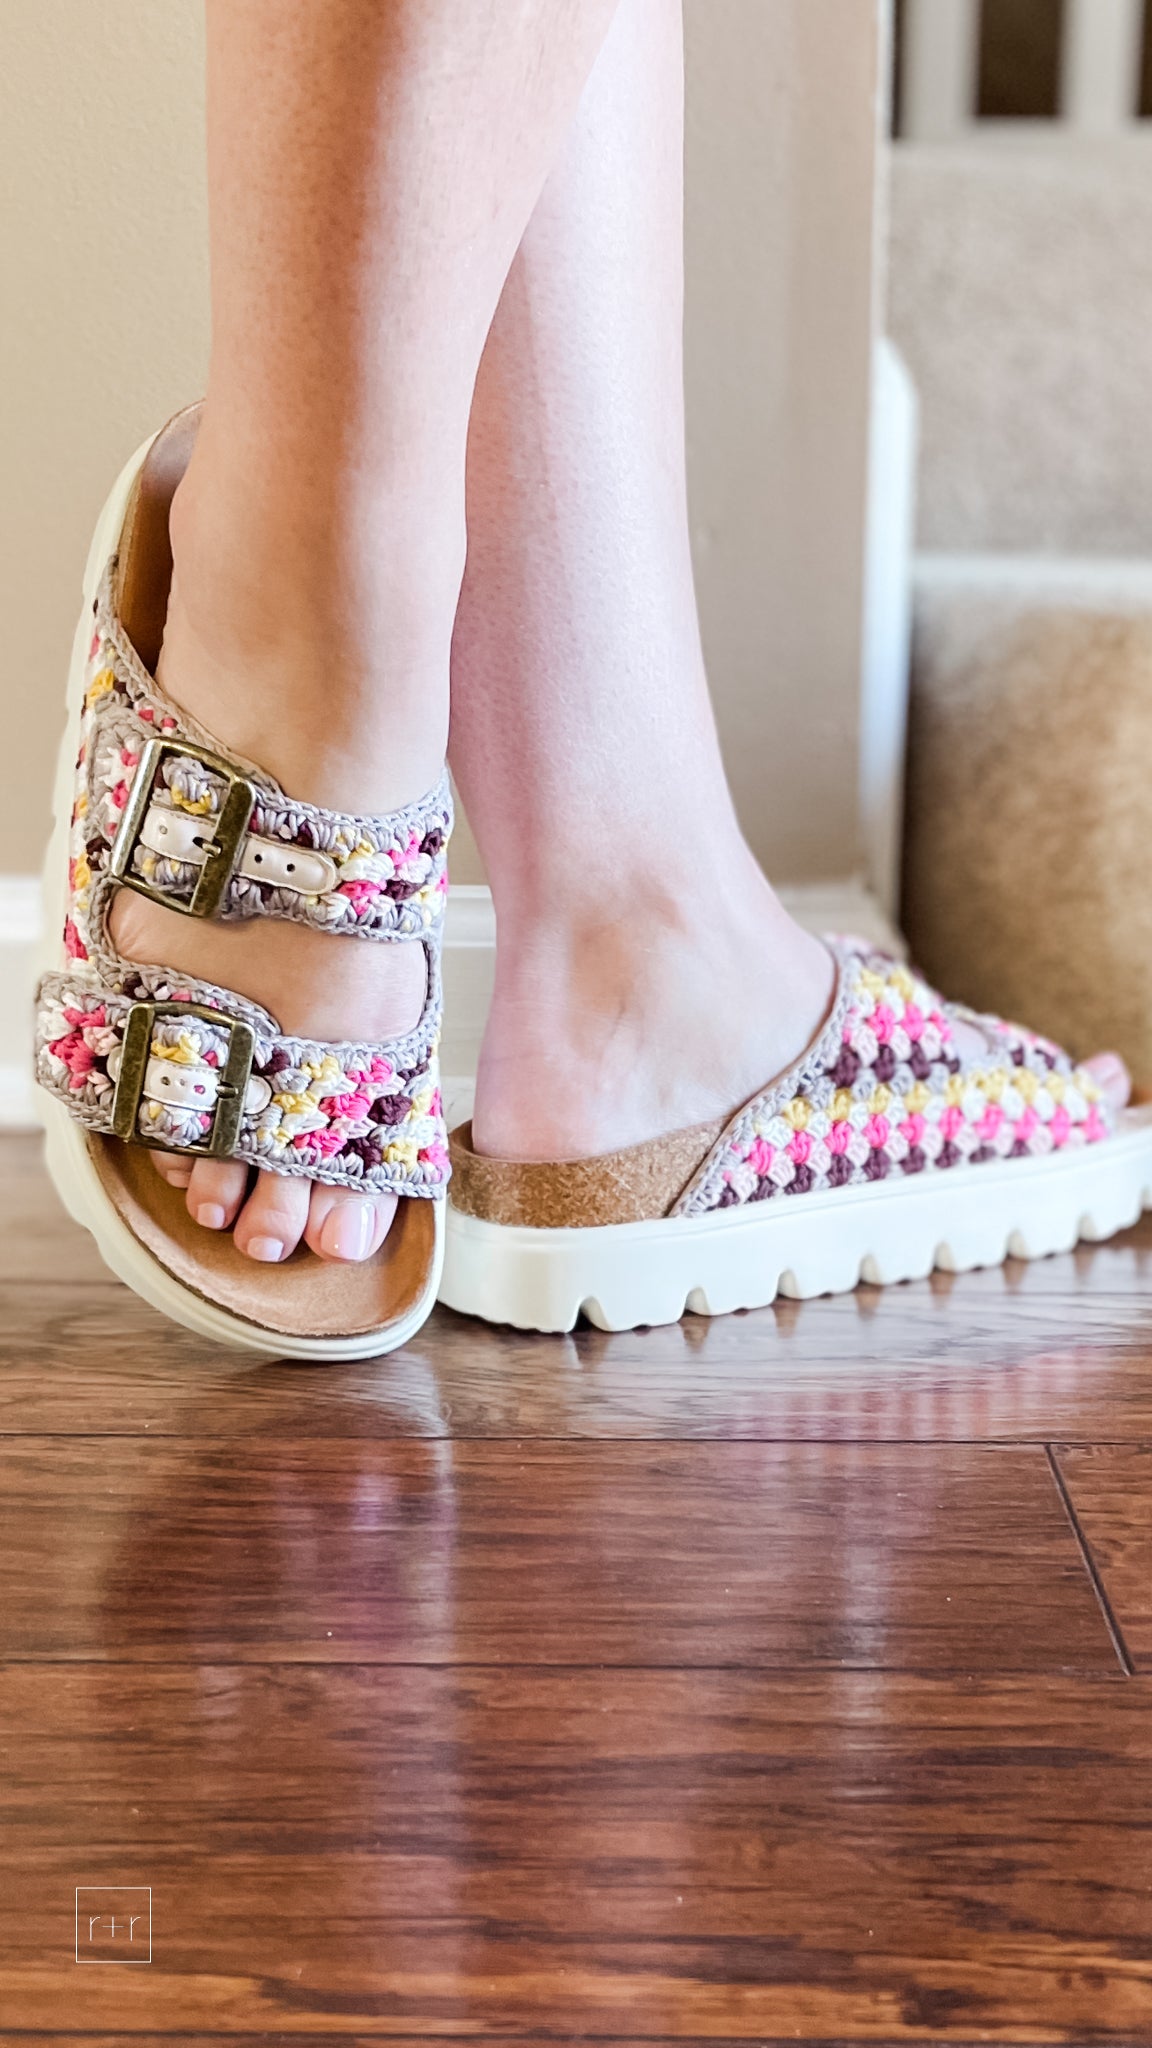 corkys rumor has it platform sandals in pink multi color macrame